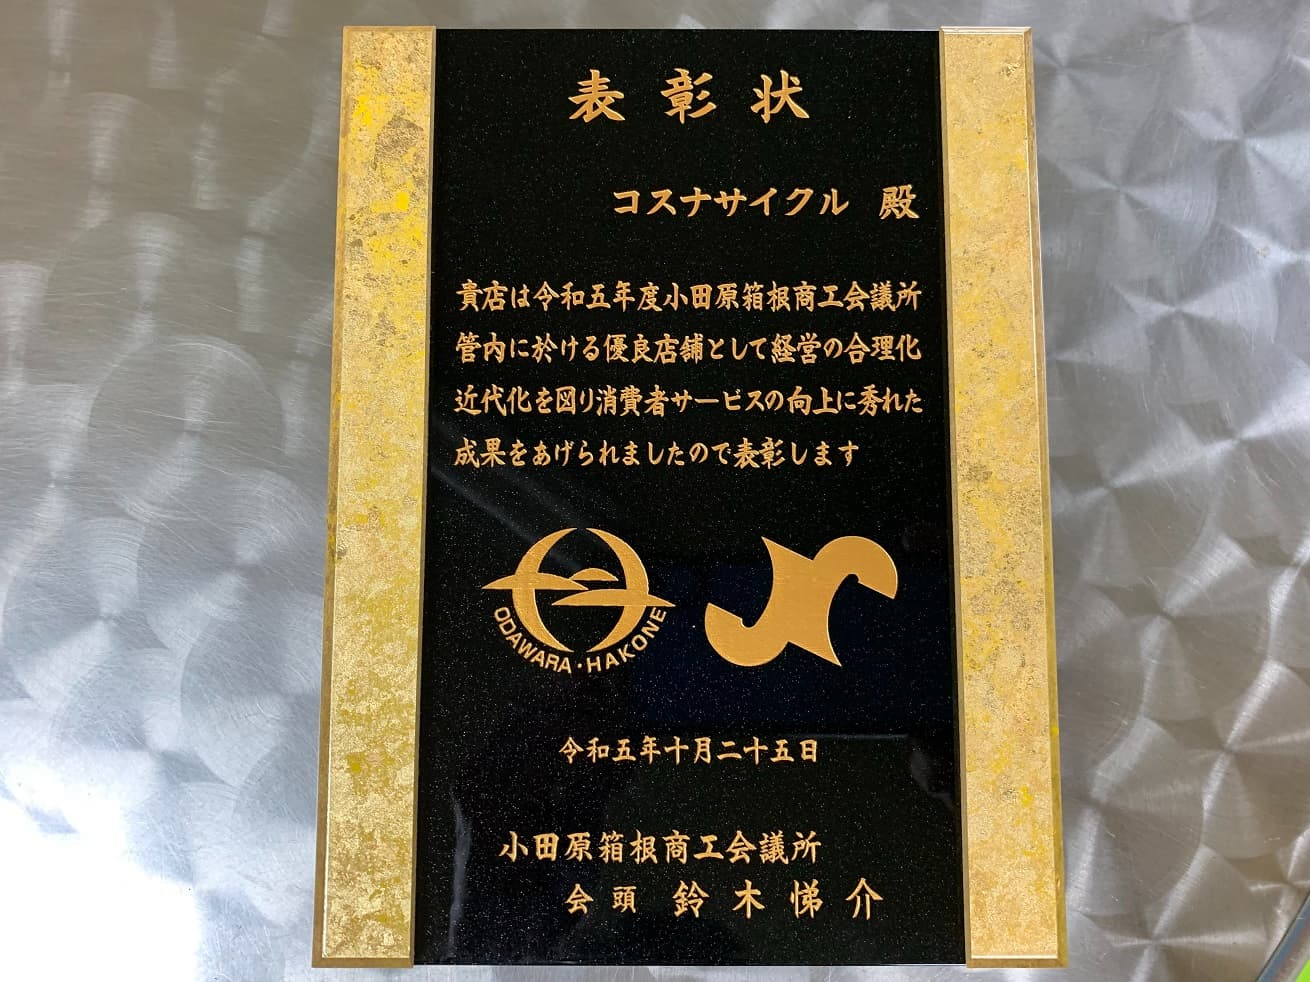 令和5年度の小田原箱根商工会議所の優良小売店舗表彰受賞の盾